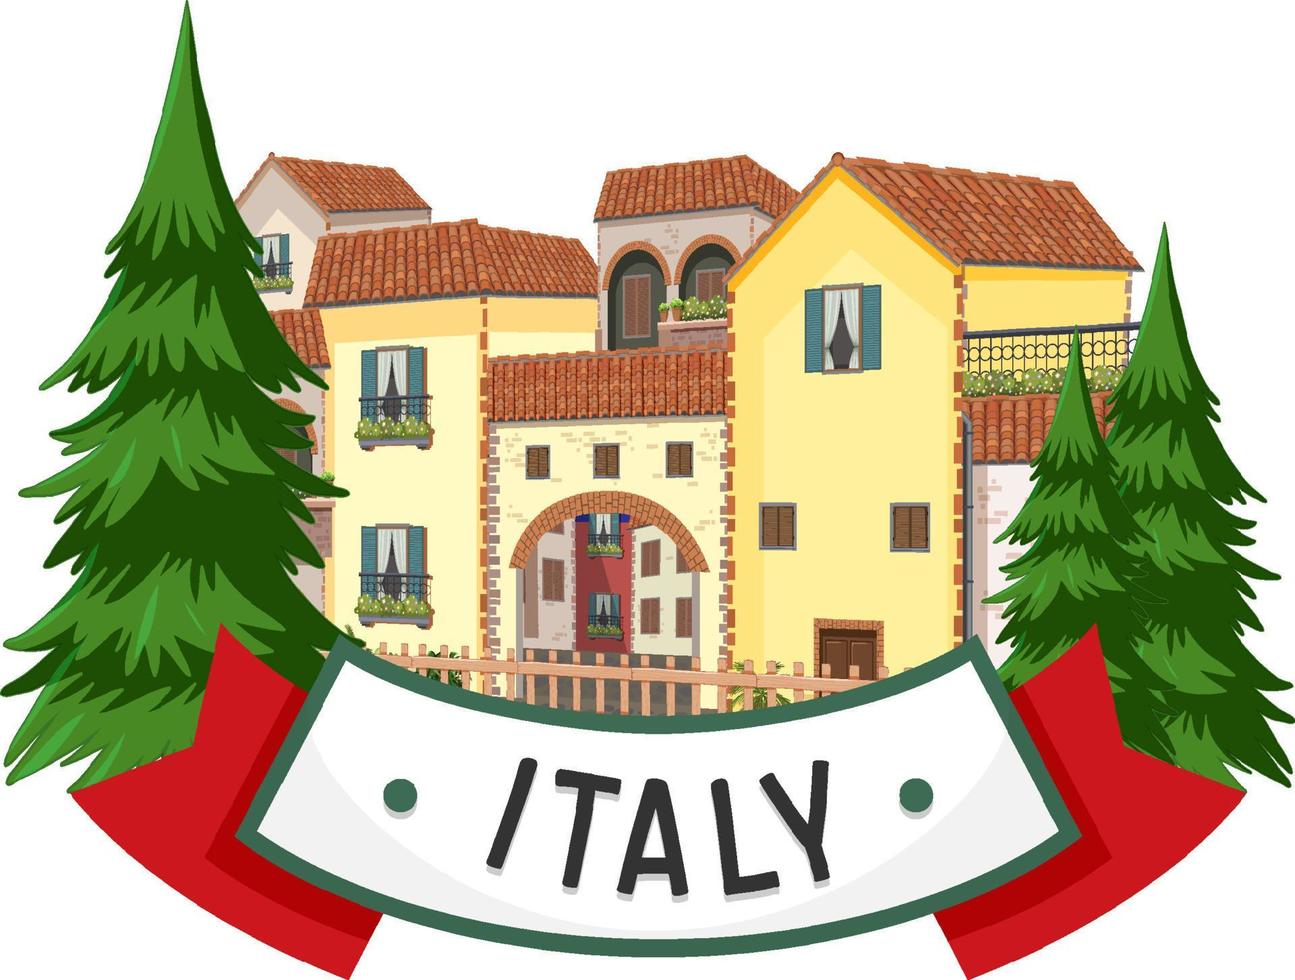 etiqueta de banner de italia con edificios de viviendas vector